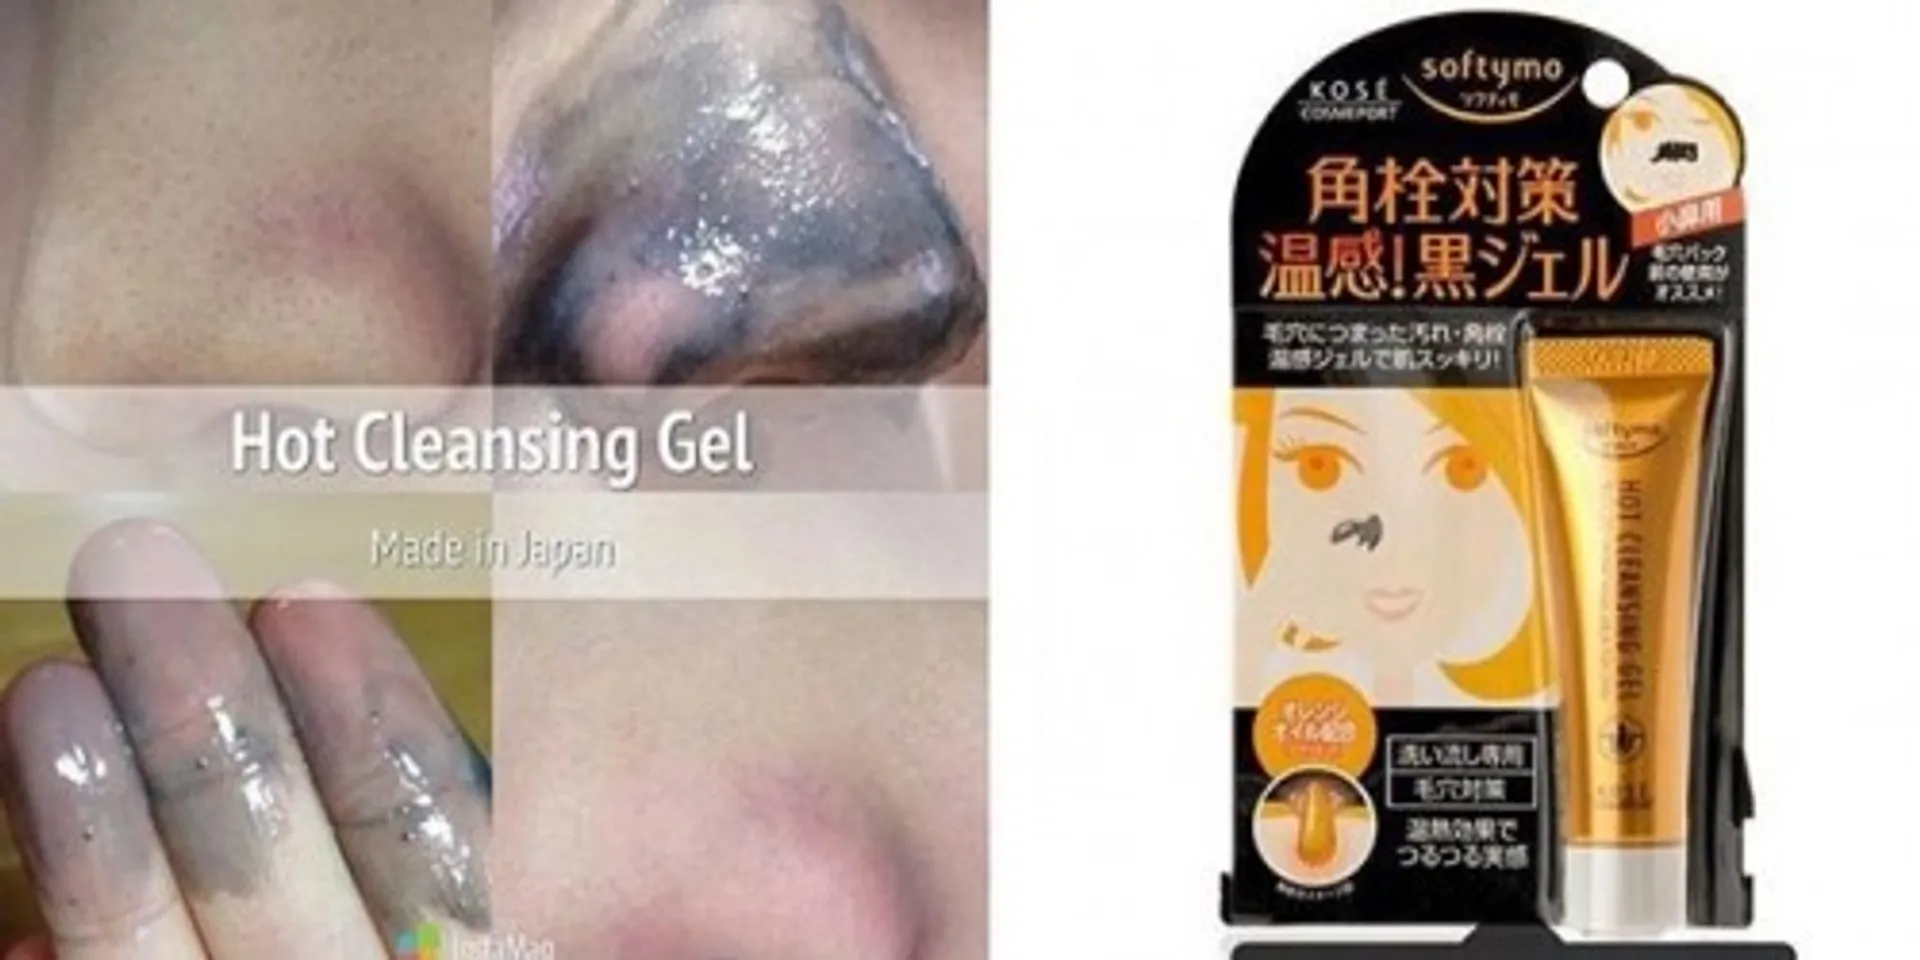 Kose Softymo Hot Cleansing Gel sẽ lột sạch nhân mụn ở các vùng da trên khuôn mặt bạn